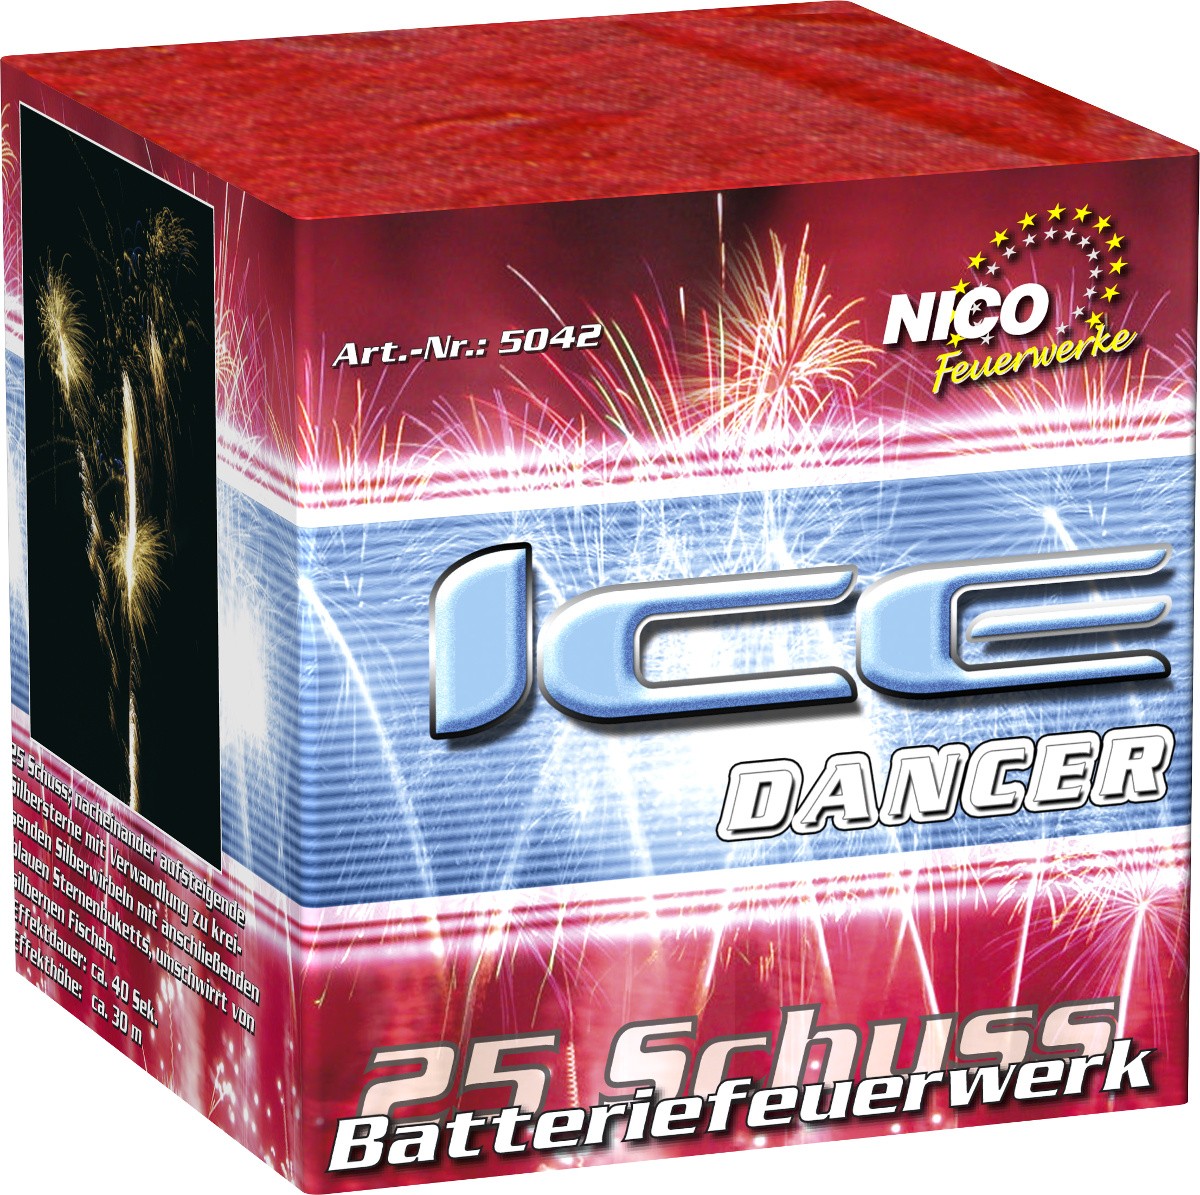 Batteriefeuerwerk Ice Dancer 25 Schuss